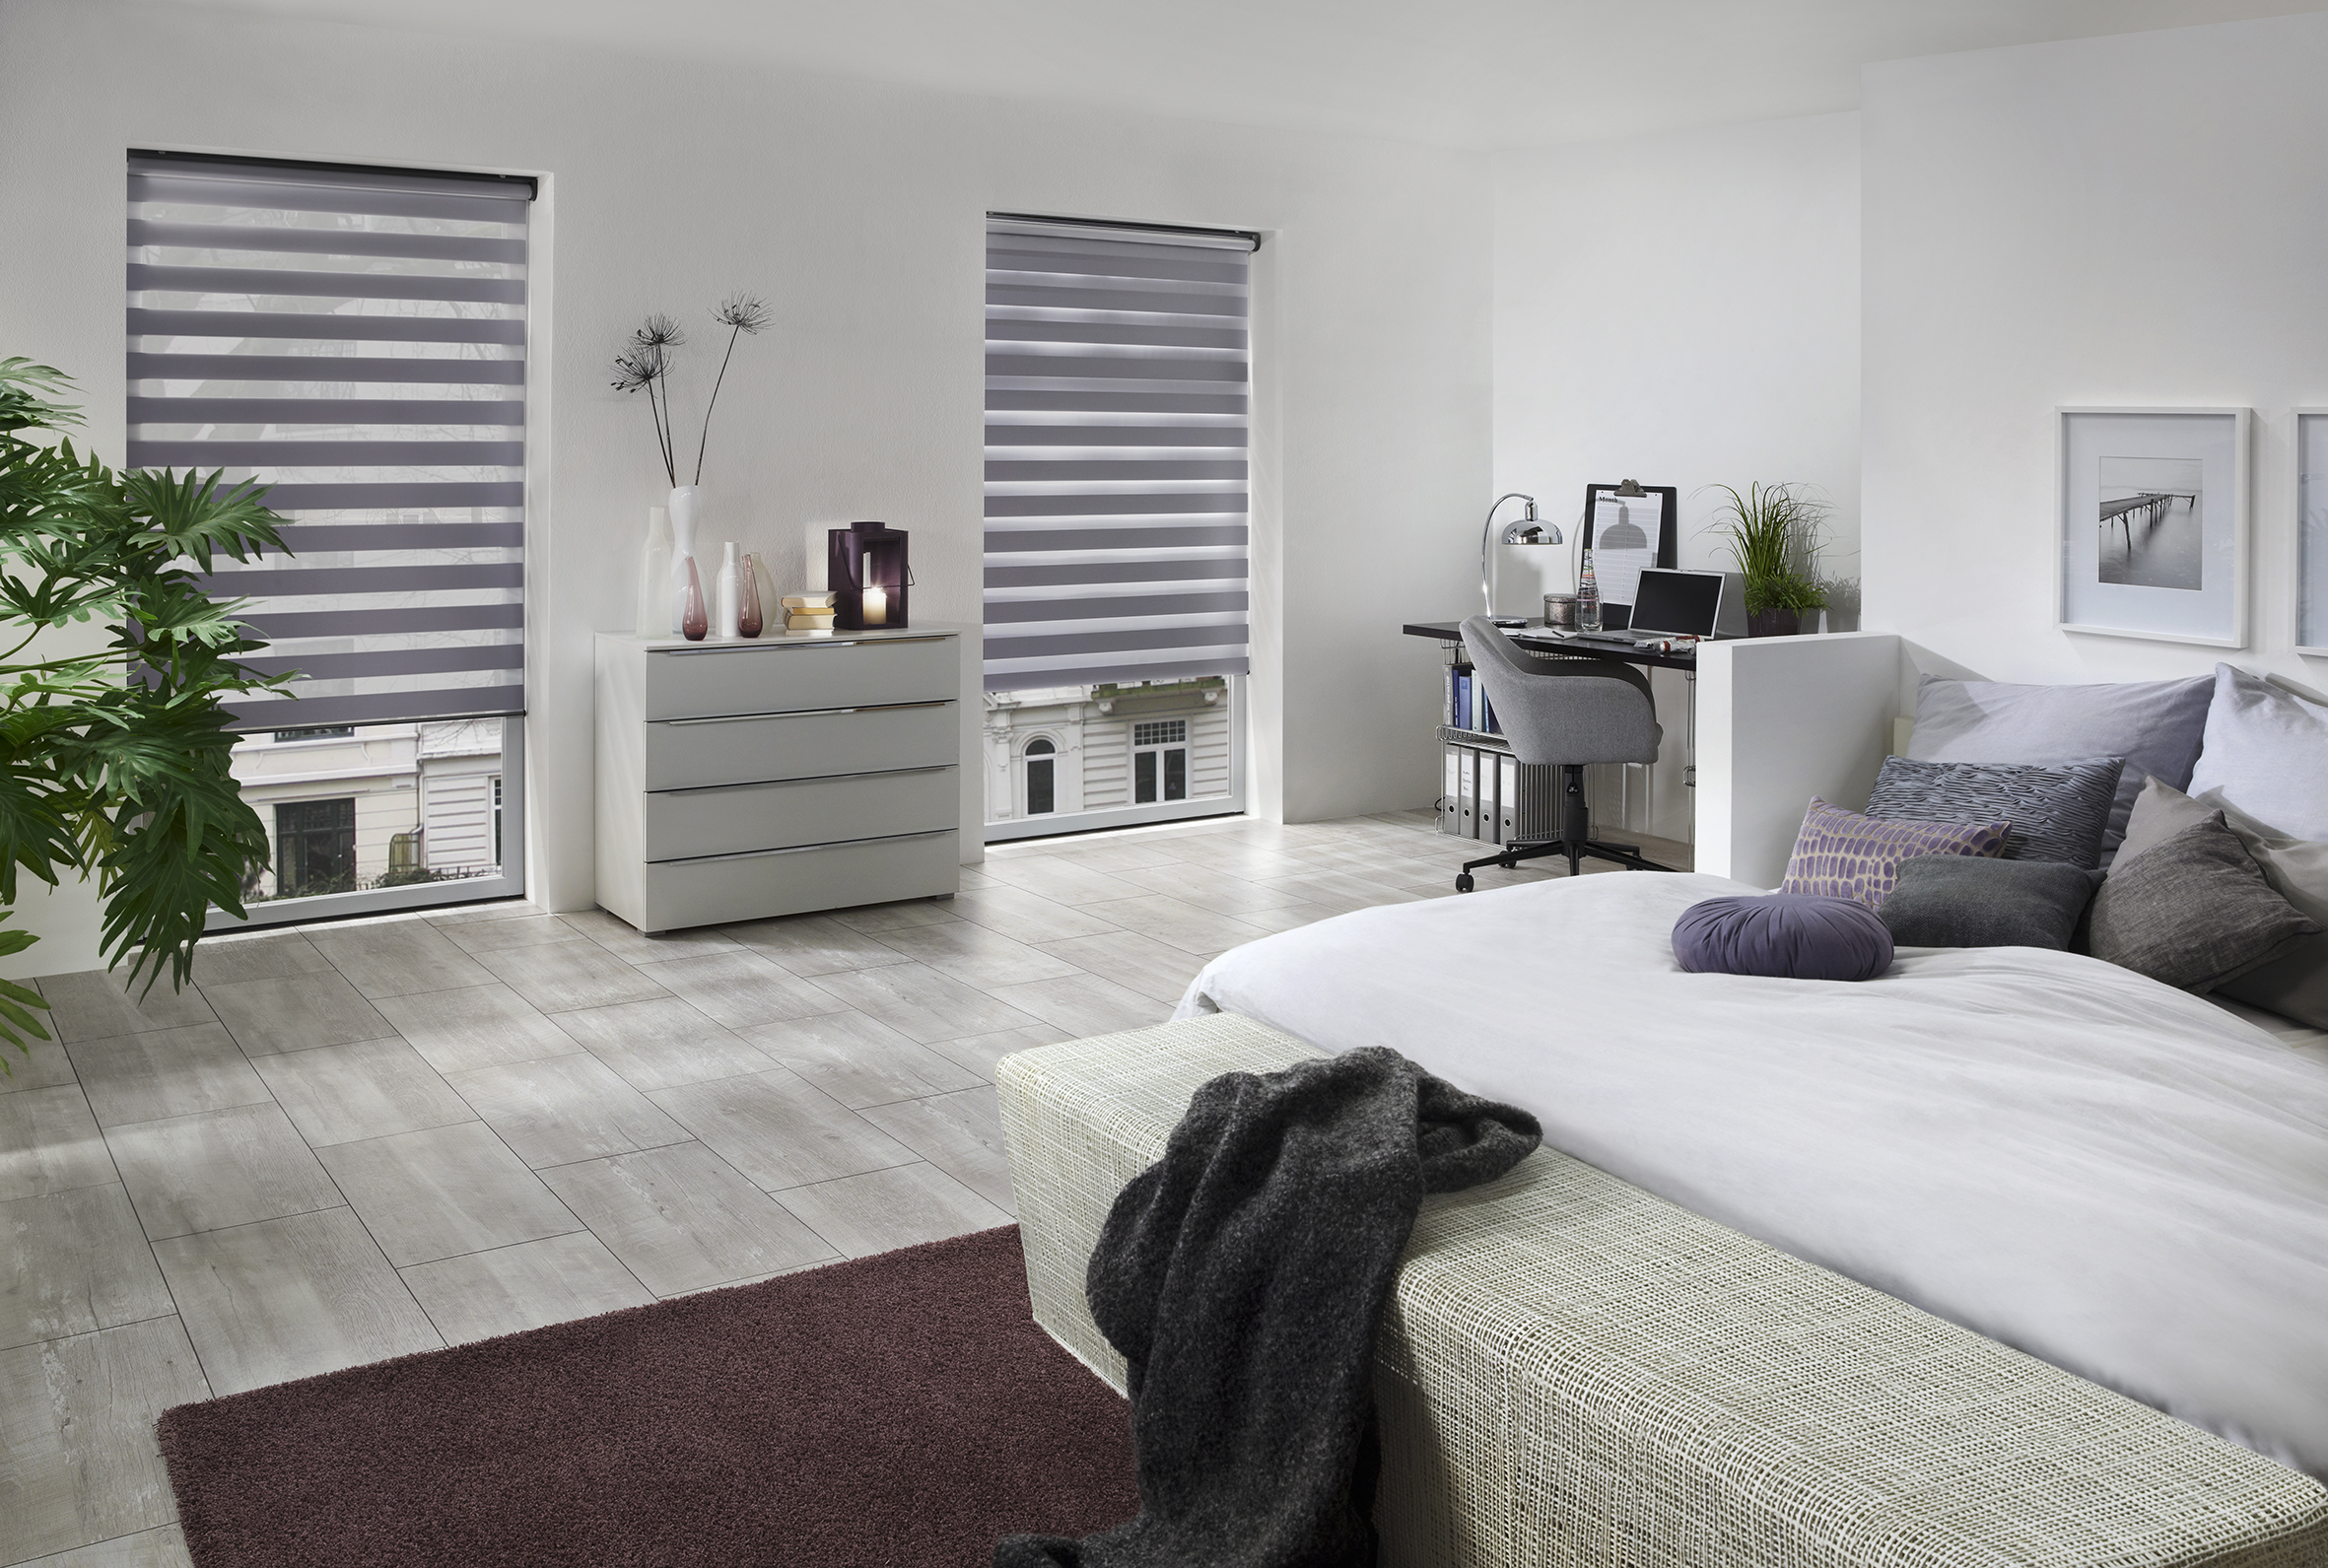 Weiß, grau gestreiftes Sonnenschutzrollo zum Sichtschutz im passendem Schlafzimmer. - Schmidt Insektenschutzrahmen GmbH